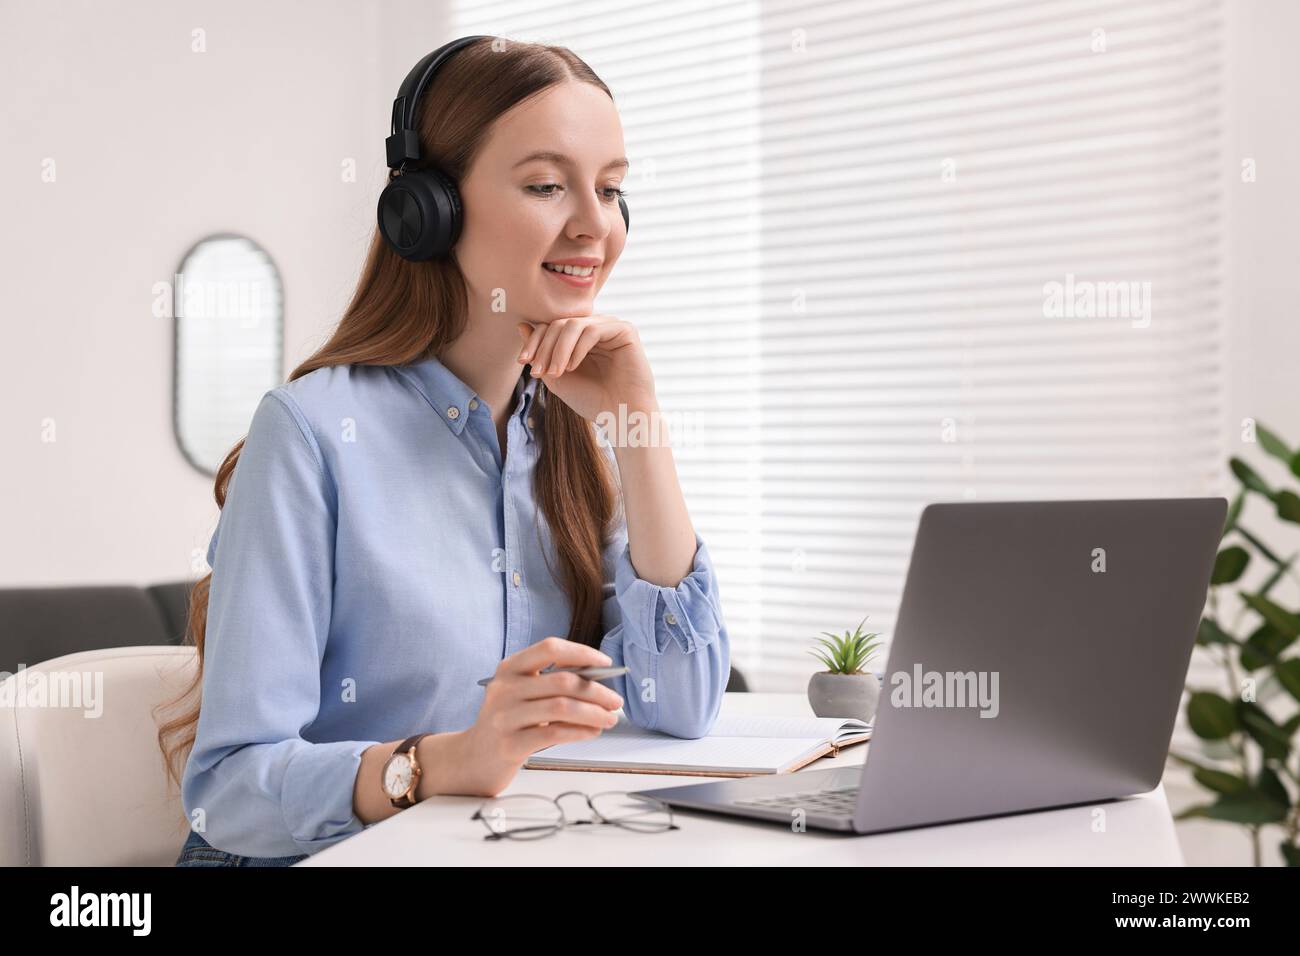 E-Learning. Junge Frau, die beim Online-Unterricht an einem weißen Tisch drinnen einen Laptop benutzt Stockfoto